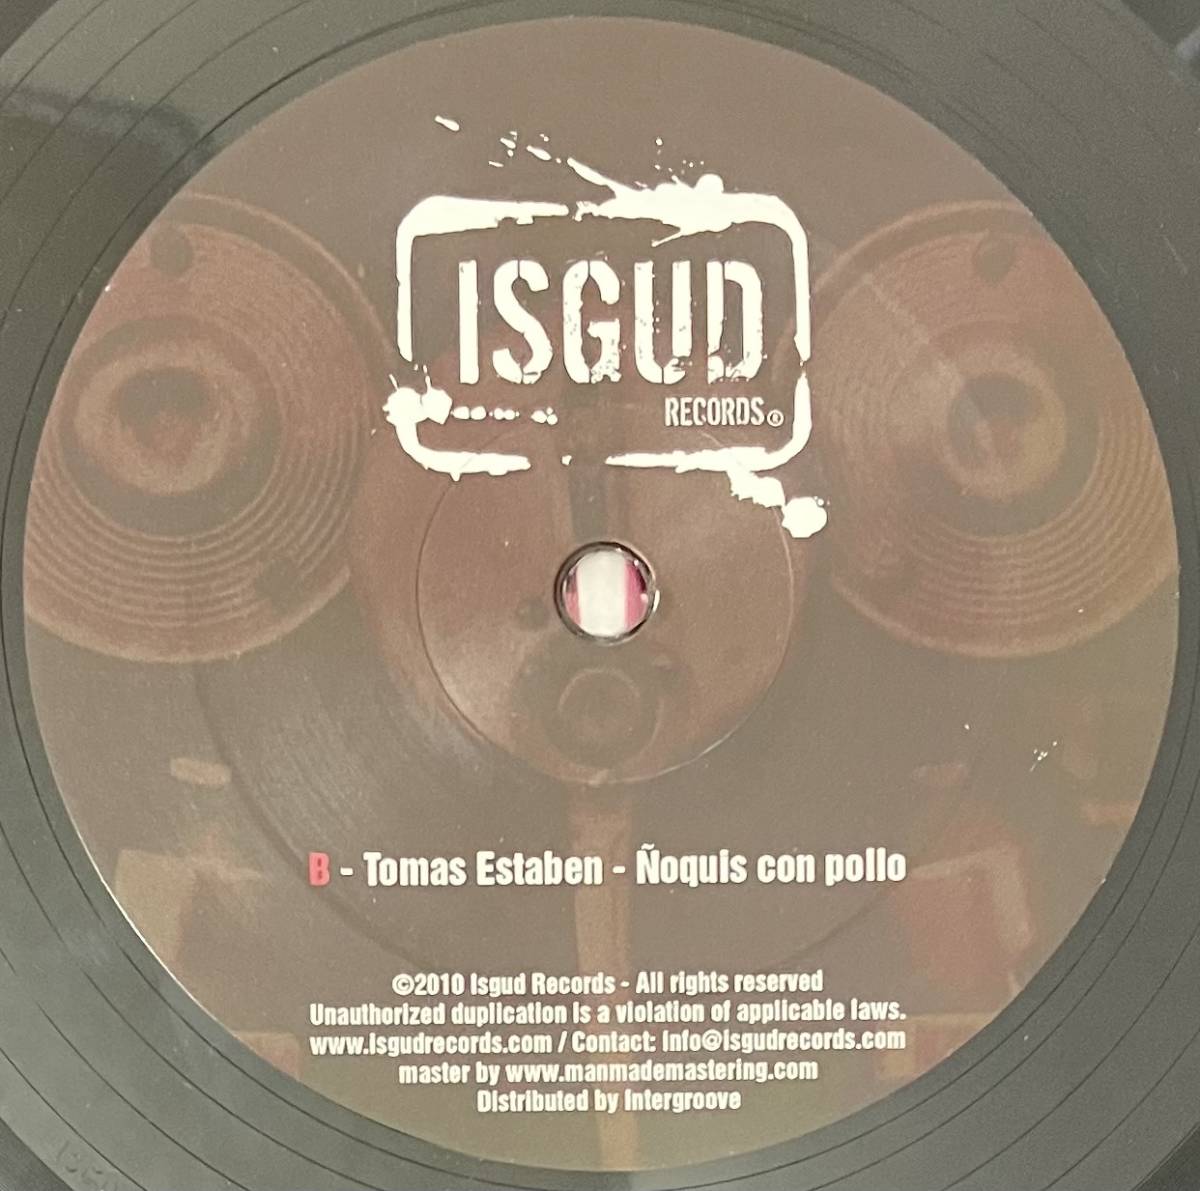 [ 12 / レコード ] Tania Vulcano & Tato / Balance Blend EP ( House / Techno ) Isgud Records ハウス テクノ_画像4